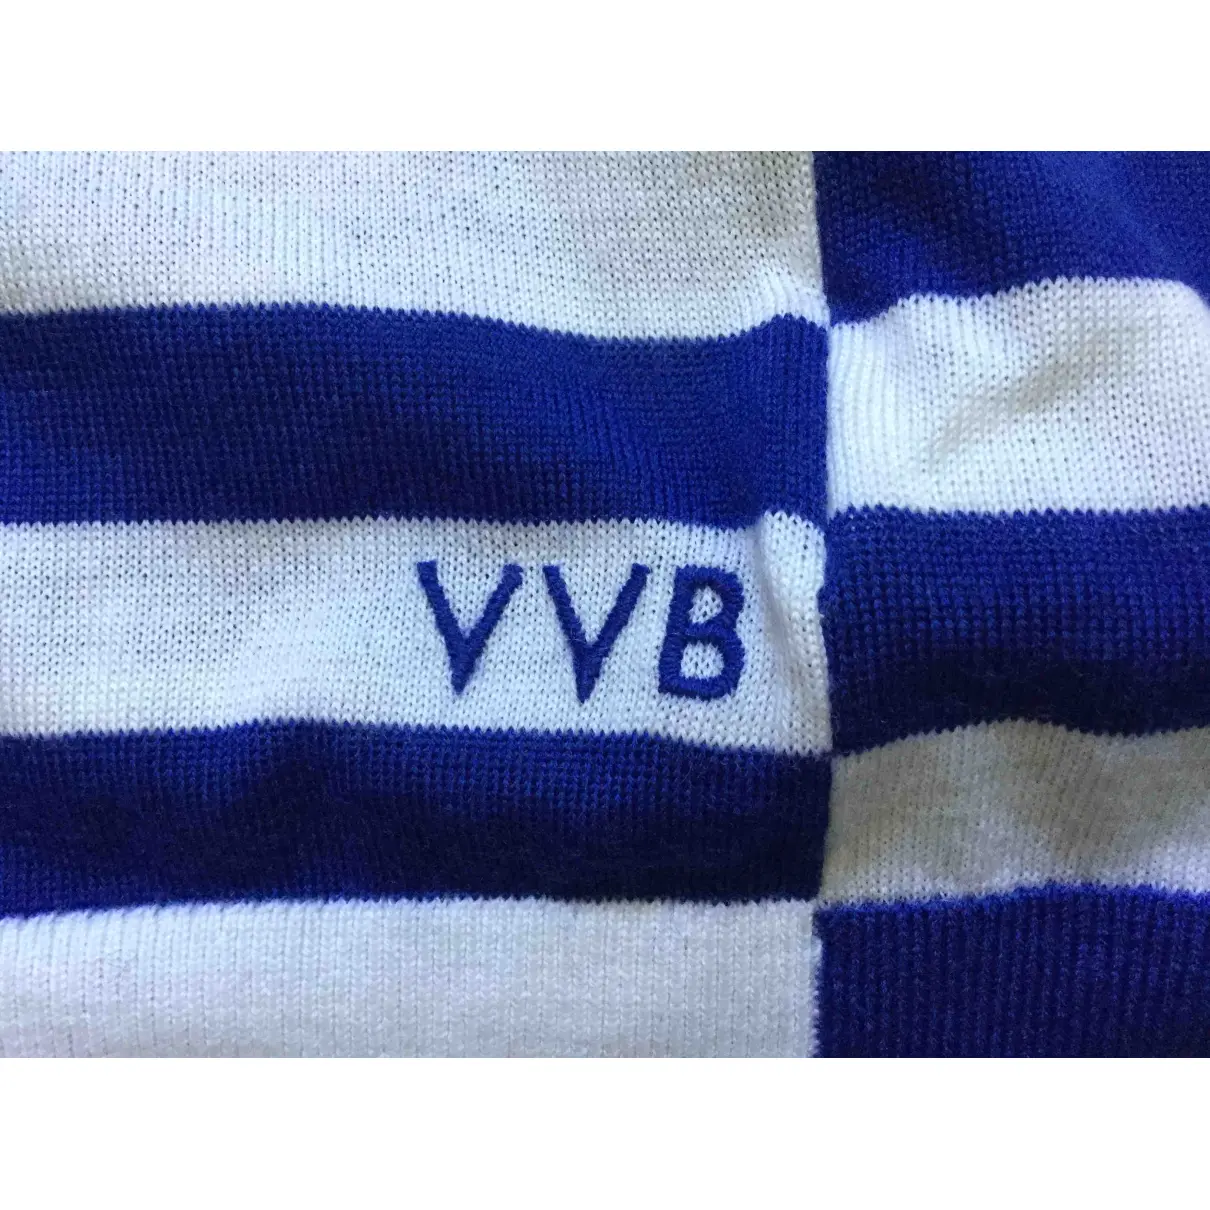 Wool jumper Victoria, Victoria Beckham